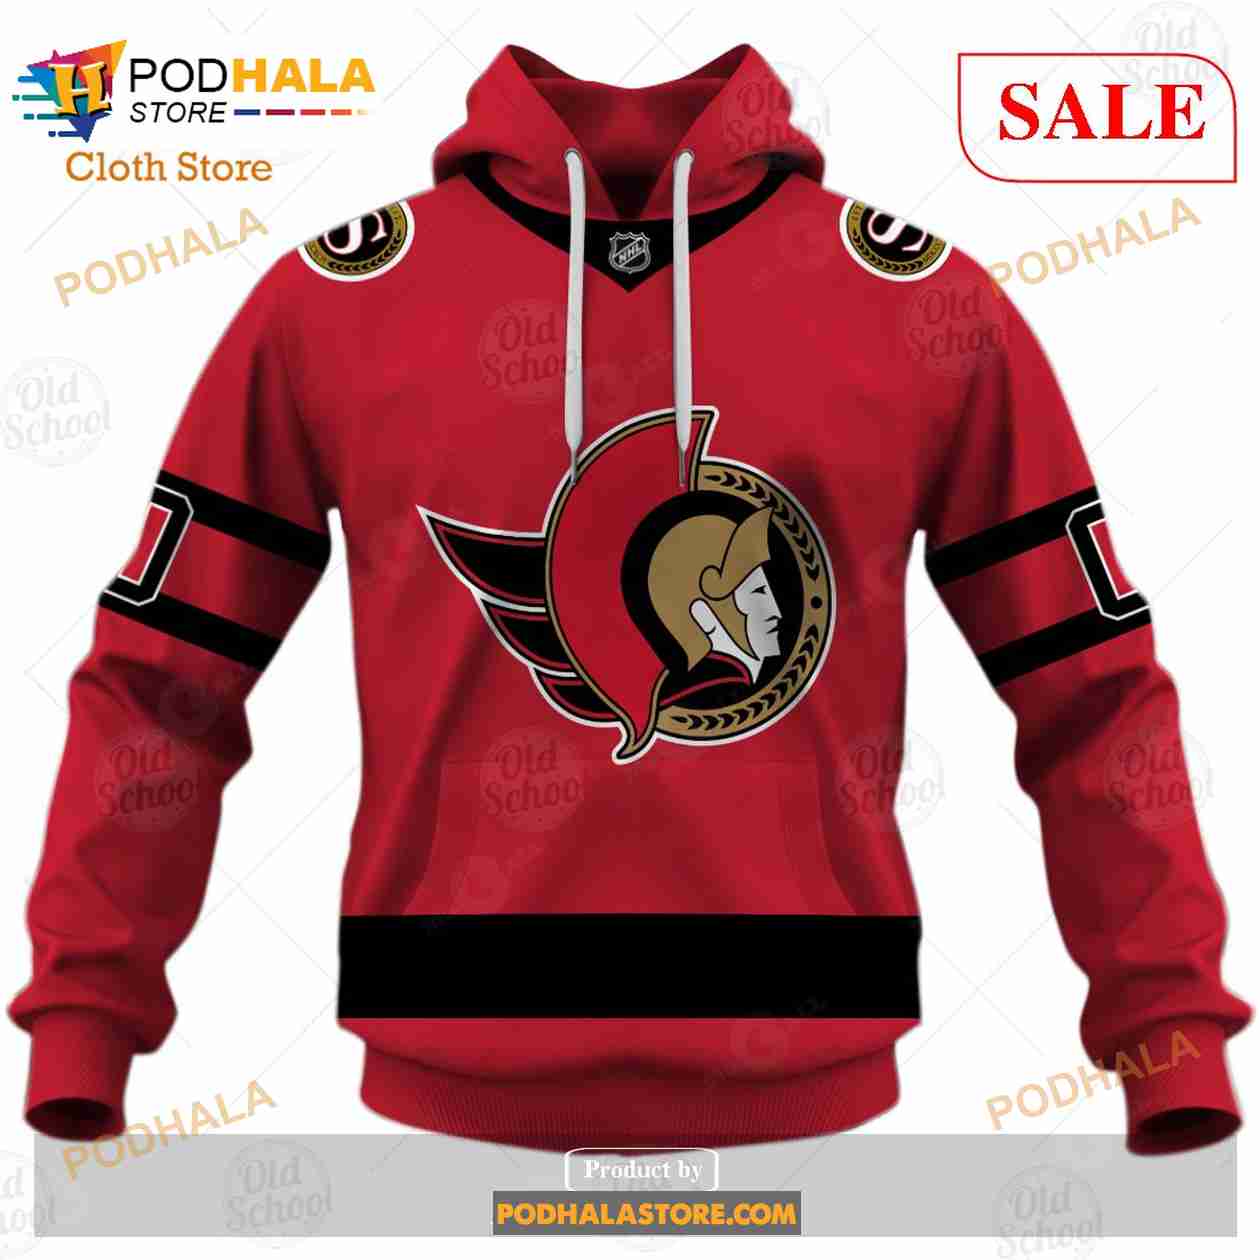 NHL Ottawa Senators Custom Name Number 2021 Reverse Retro Alternate Jersey  T-Shirt